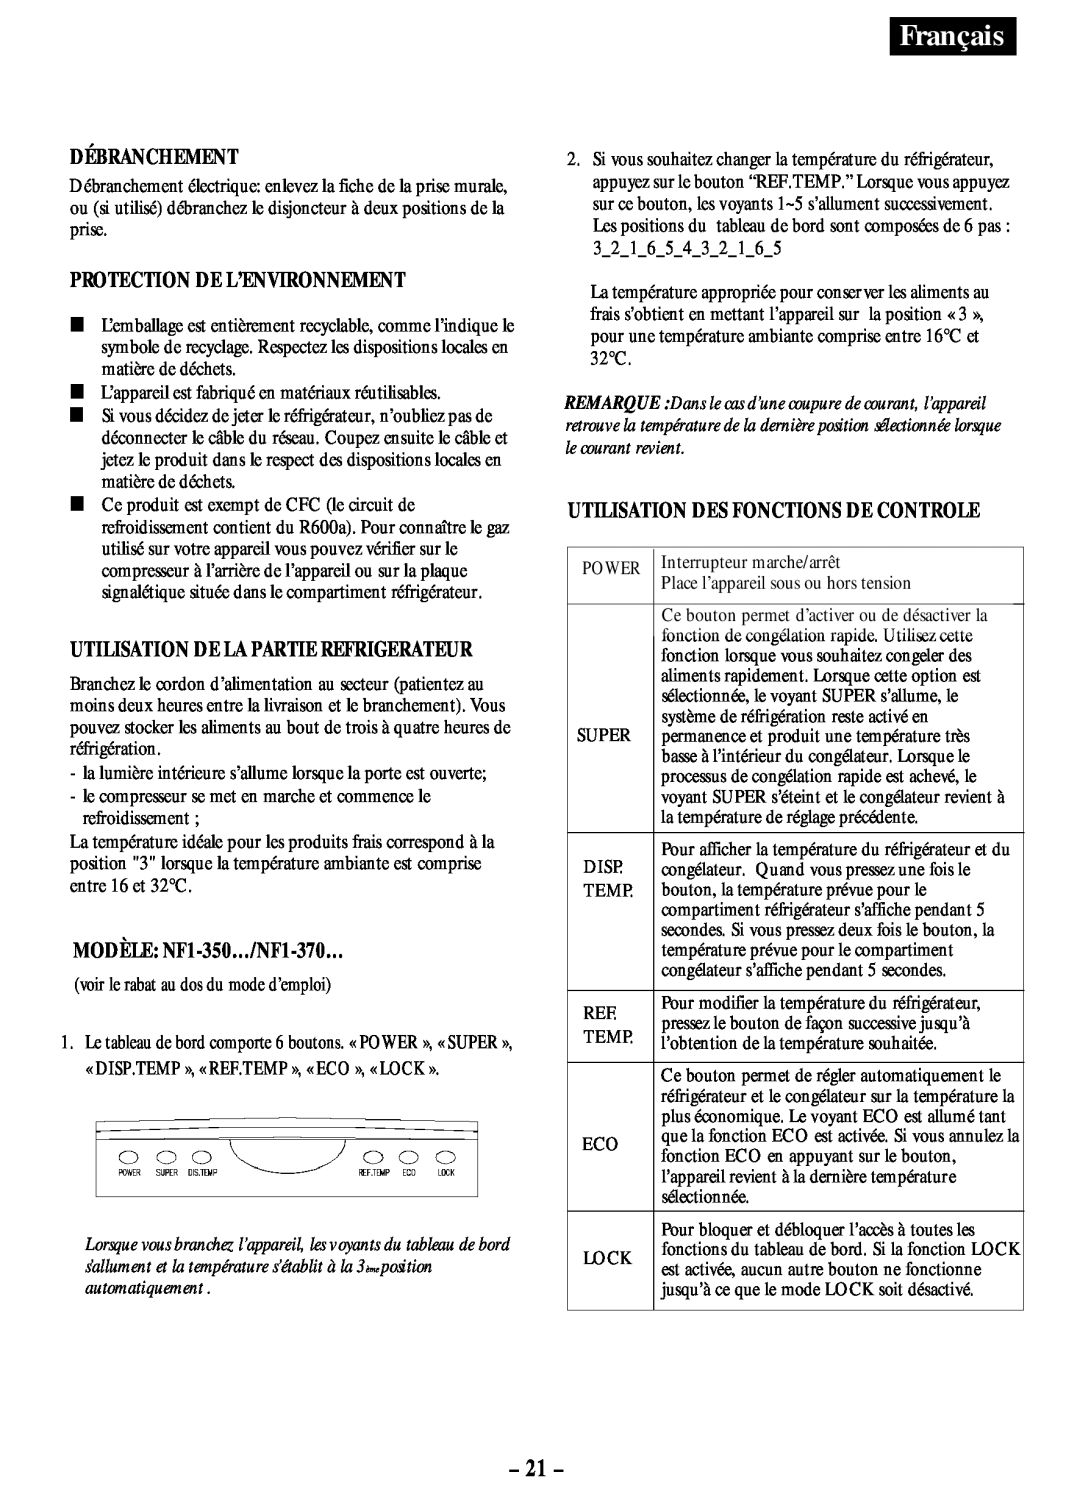 Opteka NF-340, NF-347 manual 21, Français, Débranchement, Protection De L’Environnement, MODÈLE: NF1-350…/NF1-370… 